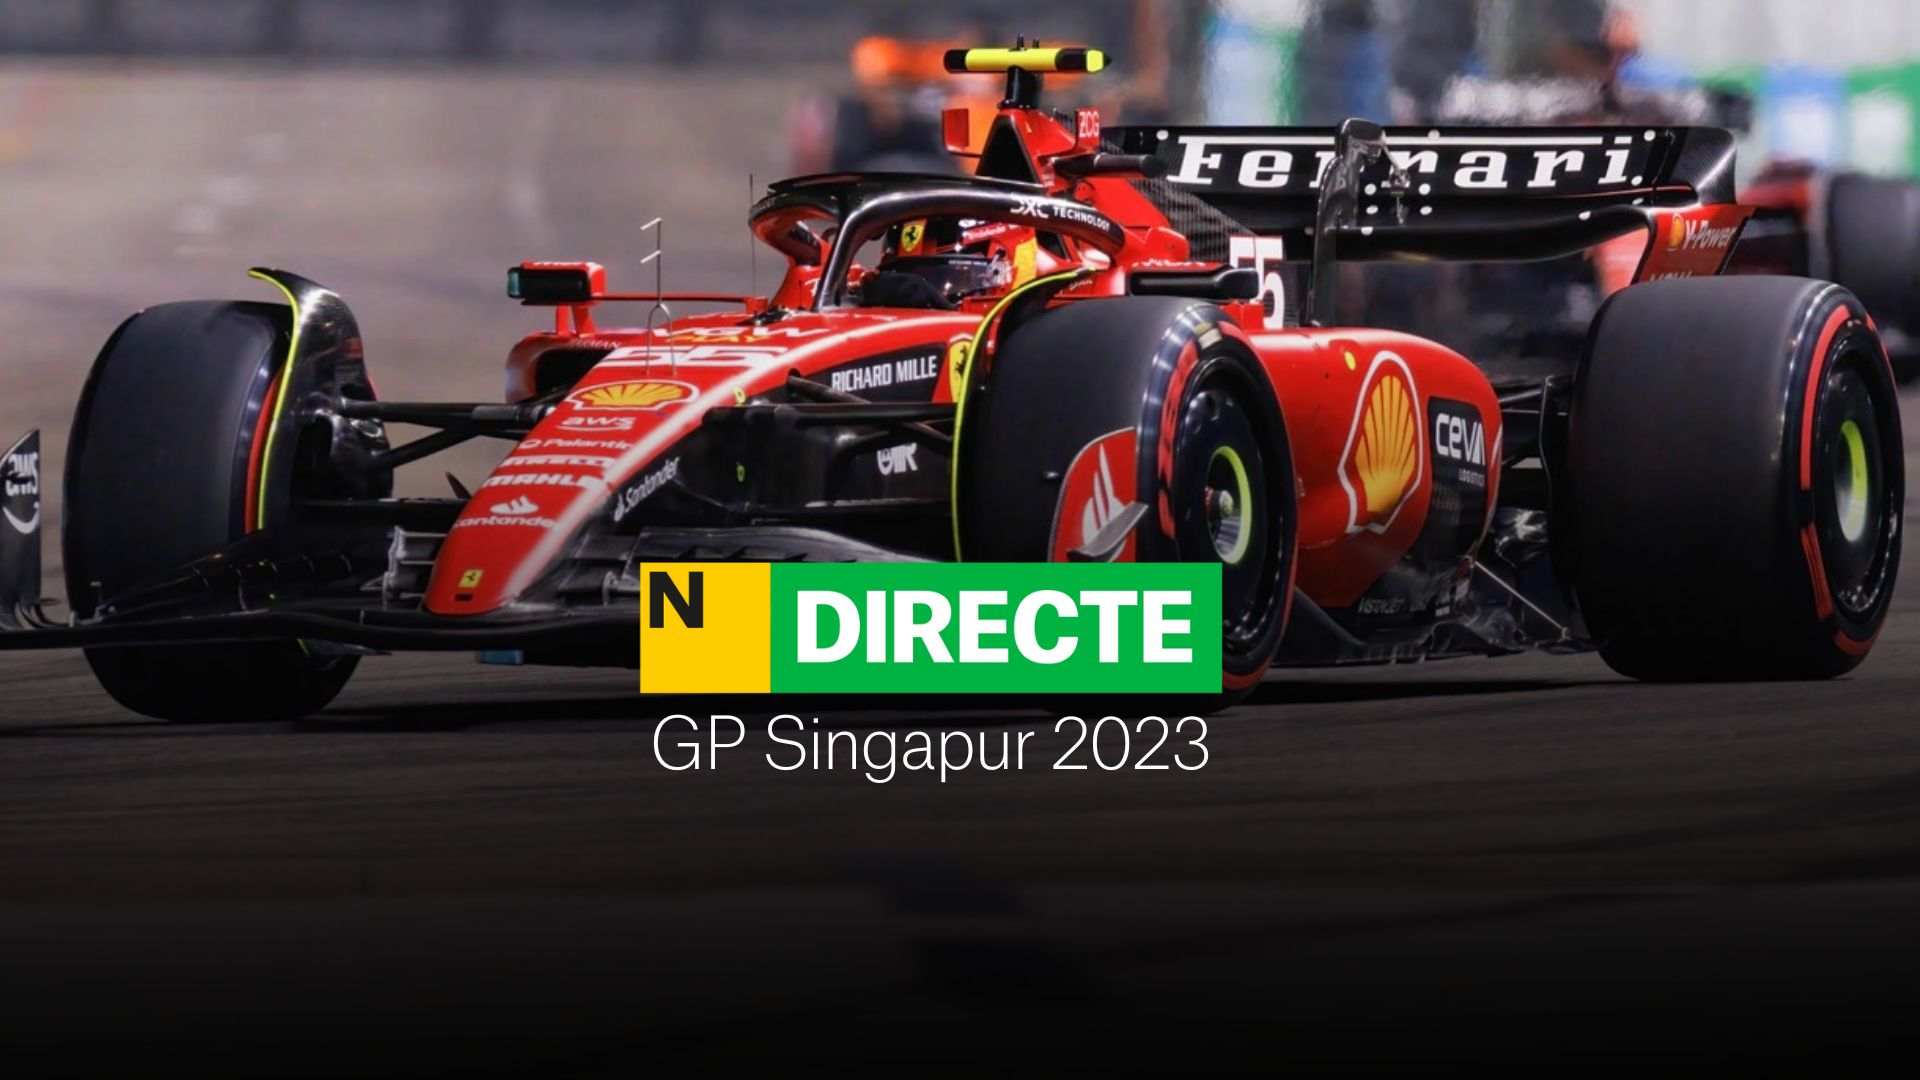 Carrera F1 hoy GP Singapur 2023, DIRECTO | resultado de la carrera de Carlos Sainz y Fernando Alonso